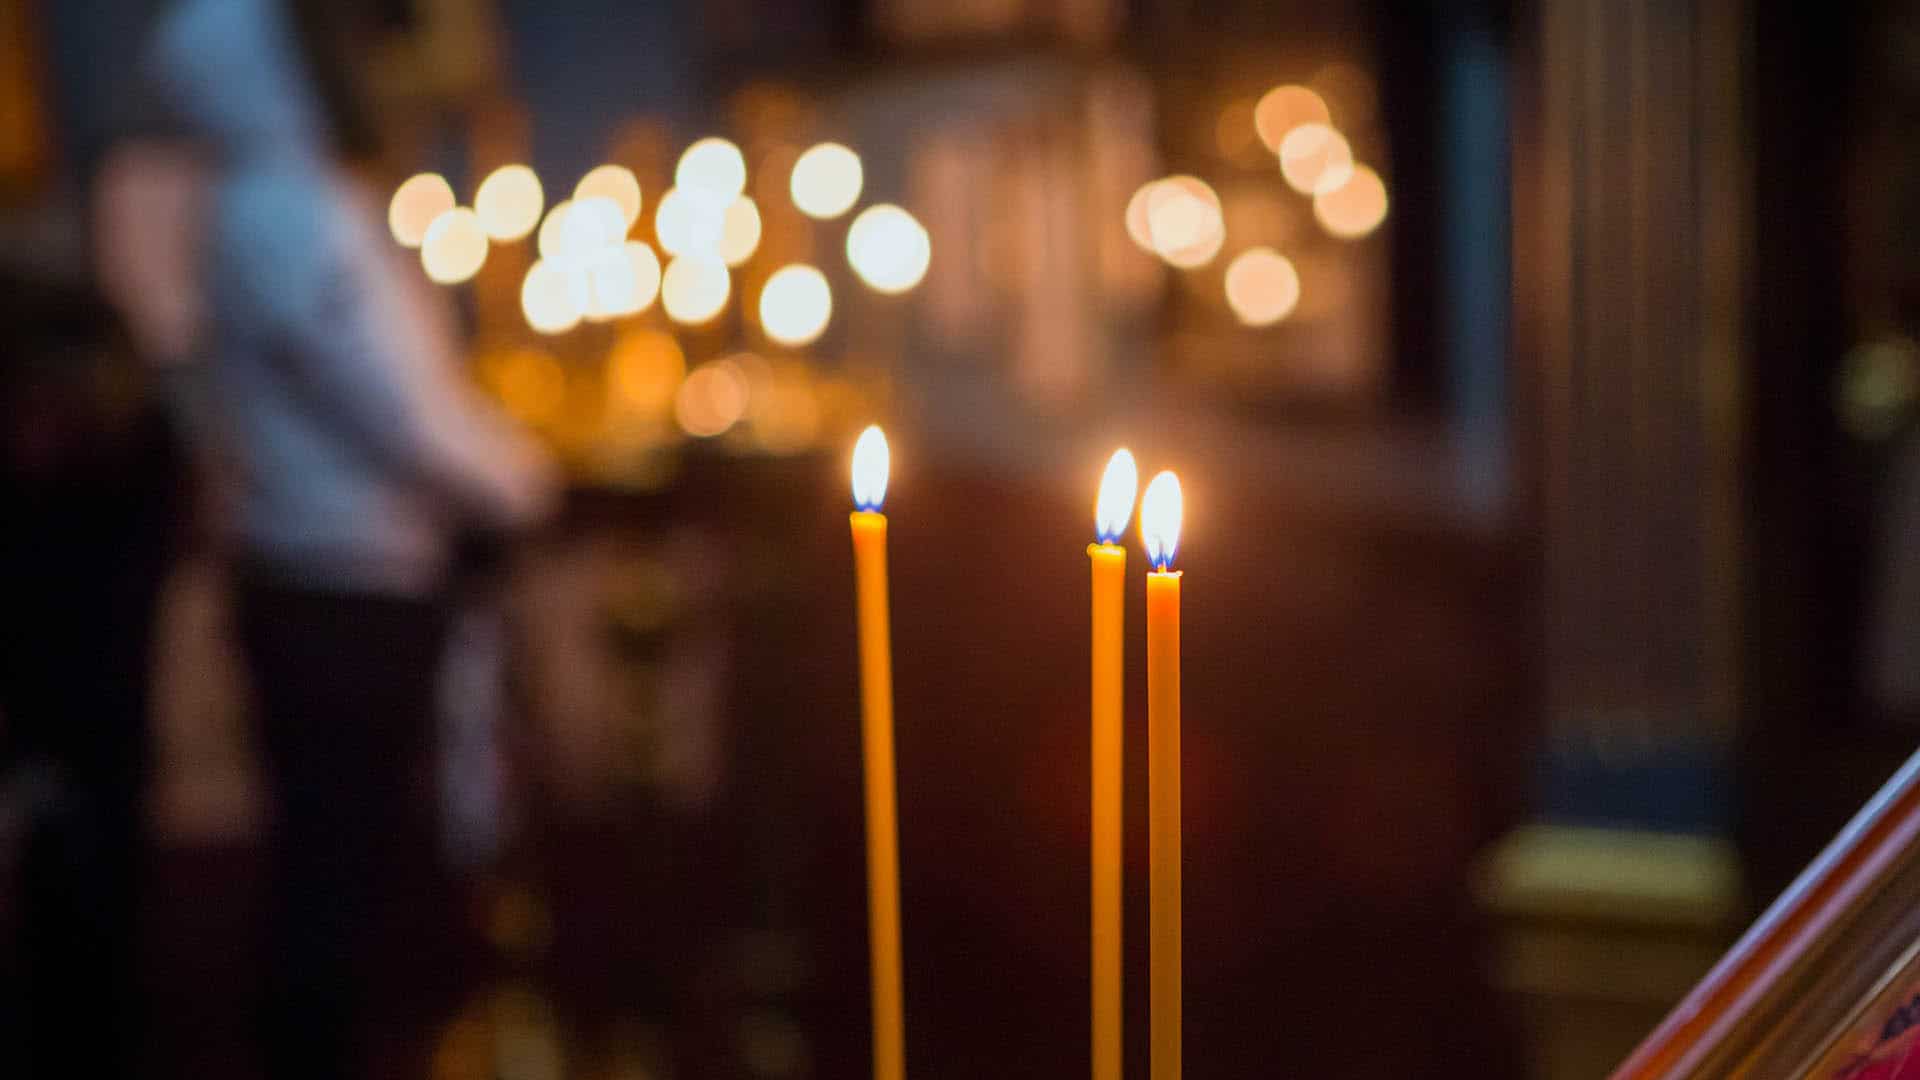 „Heiligabend wird ganz anders werden – ohne Krippenspiel und ohne Chor“, sagt der 48-jährige Christoph Scieszka, Pastor der St. Ansverus-Gemeinde in Hamburg, zu der auch die Spiegel-Autorin gehört